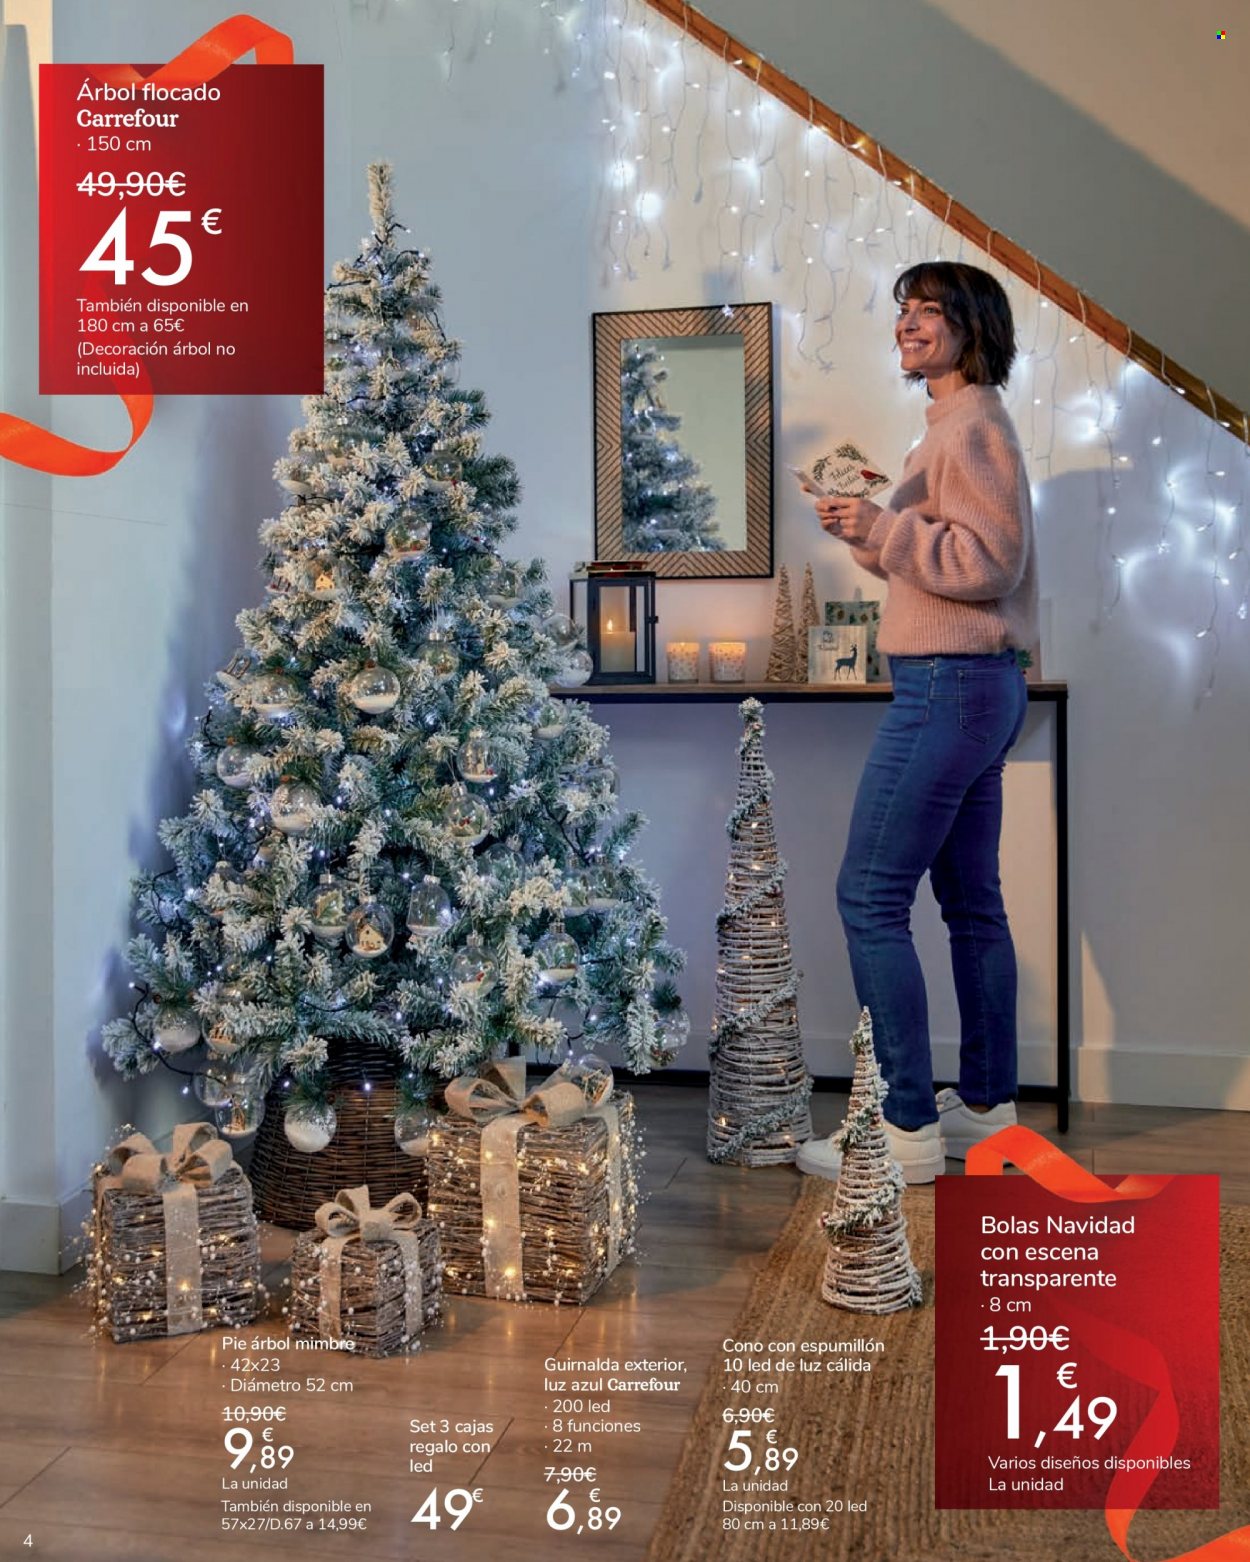 thumbnail - Folleto actual Carrefour - 11/11/21 - 09/12/21 - Ventas - caja de regalo, guirnalda, árbol de Navidad. Página 4.